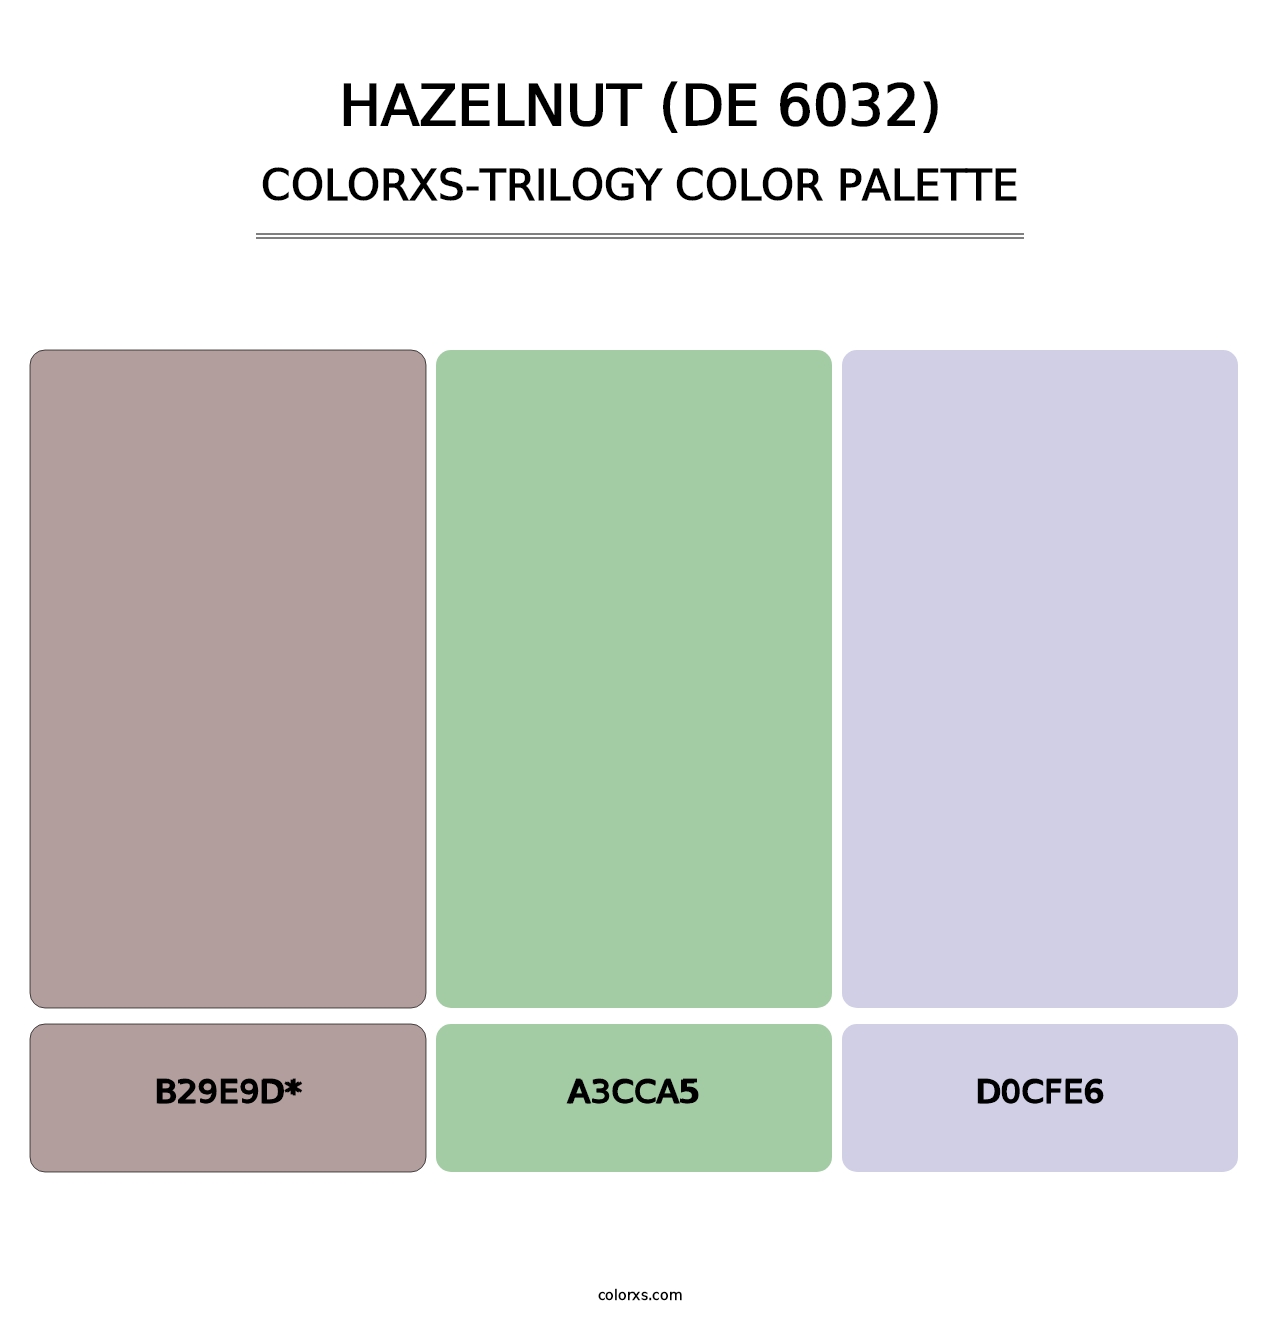 Hazelnut (DE 6032) - Colorxs Trilogy Palette